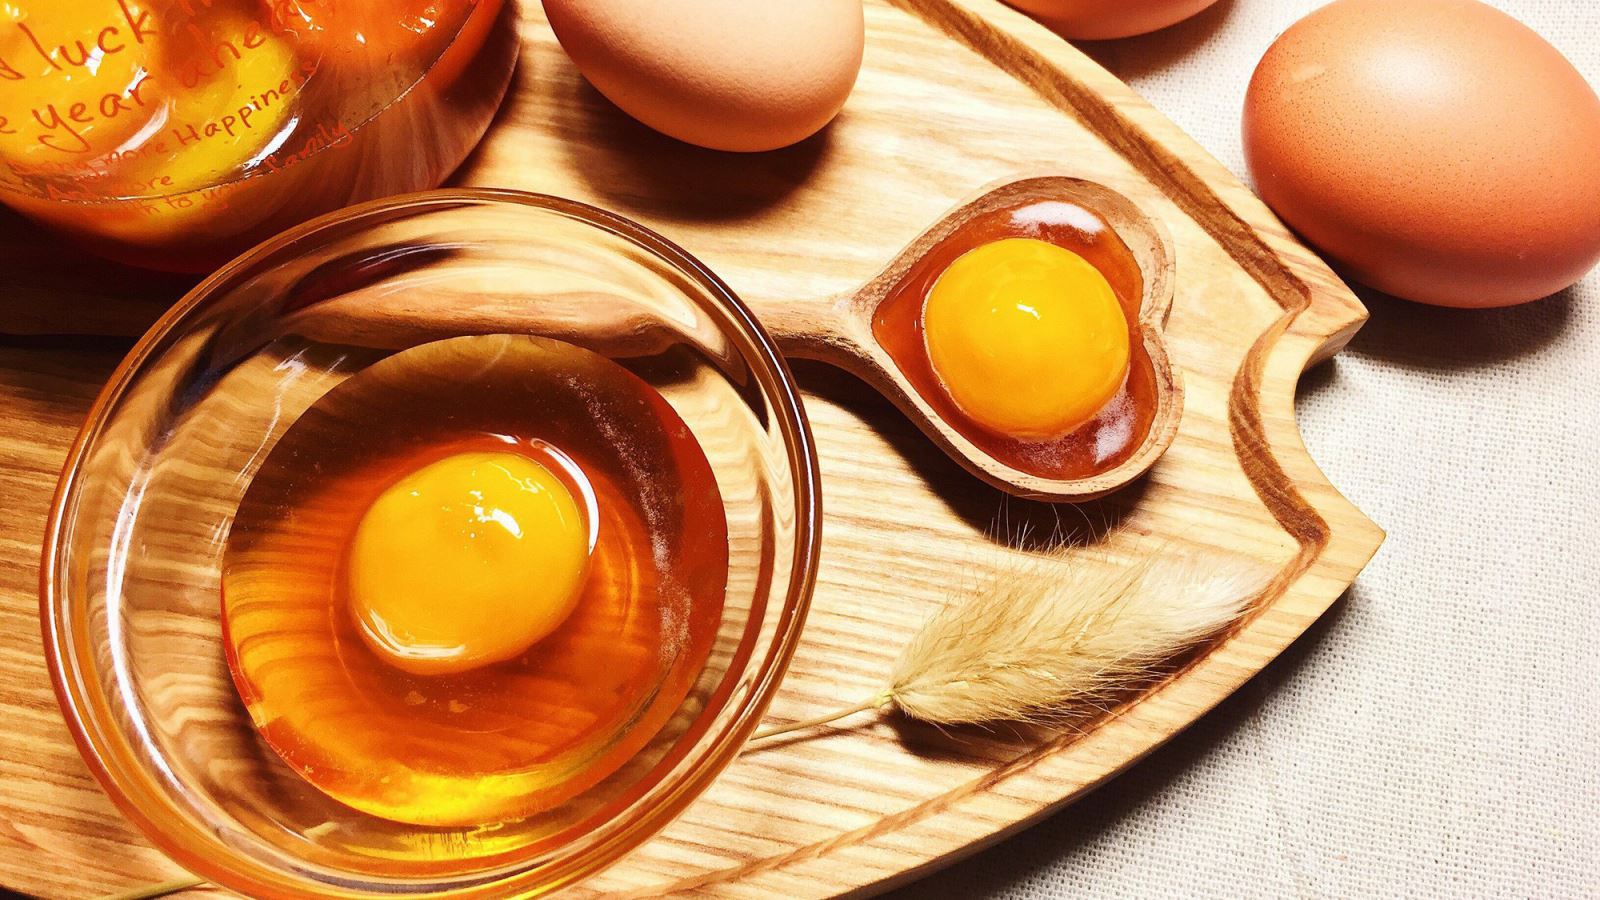 Ngoài việc ăn trứng gà, người bị máu nhiễm mỡ cần thực hiện những biện pháp nào khác để duy trì sức khỏe tốt?